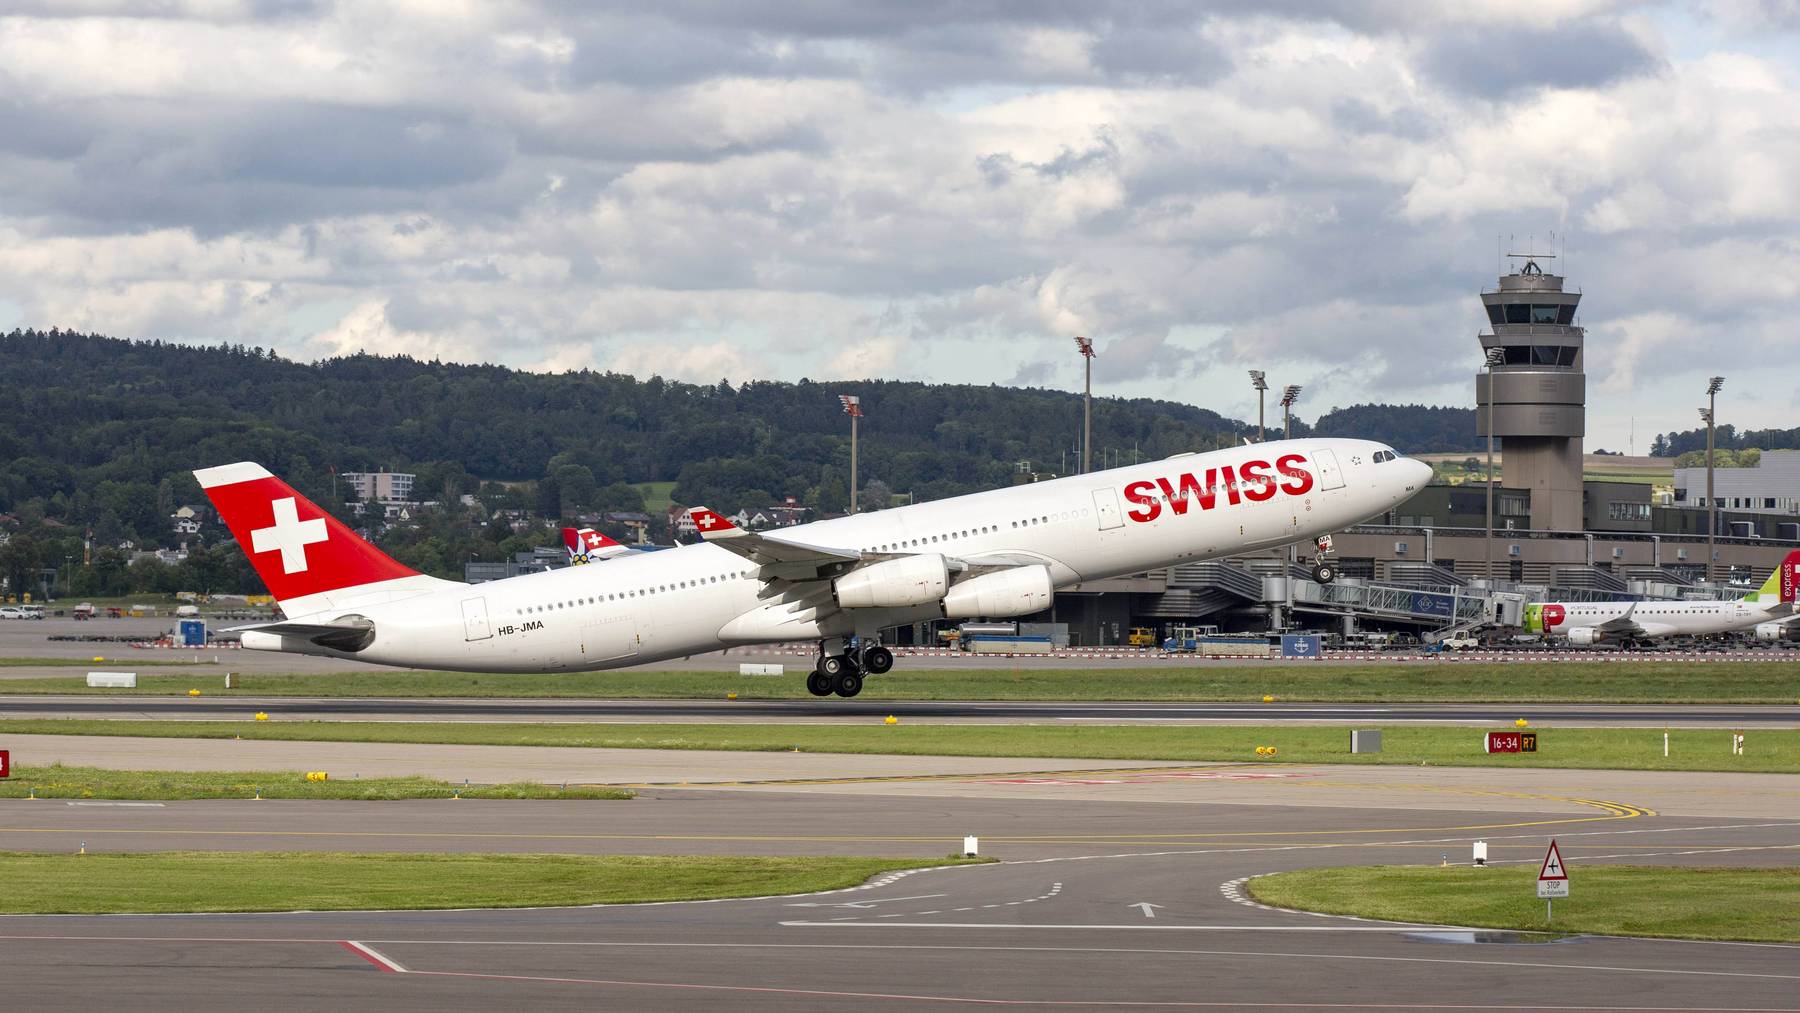 Will bald wieder deutlich öfter abheben: Die Schweizer Fluggesellschaft Swiss baut ihr Flugangebot nach Corona weiter aus.